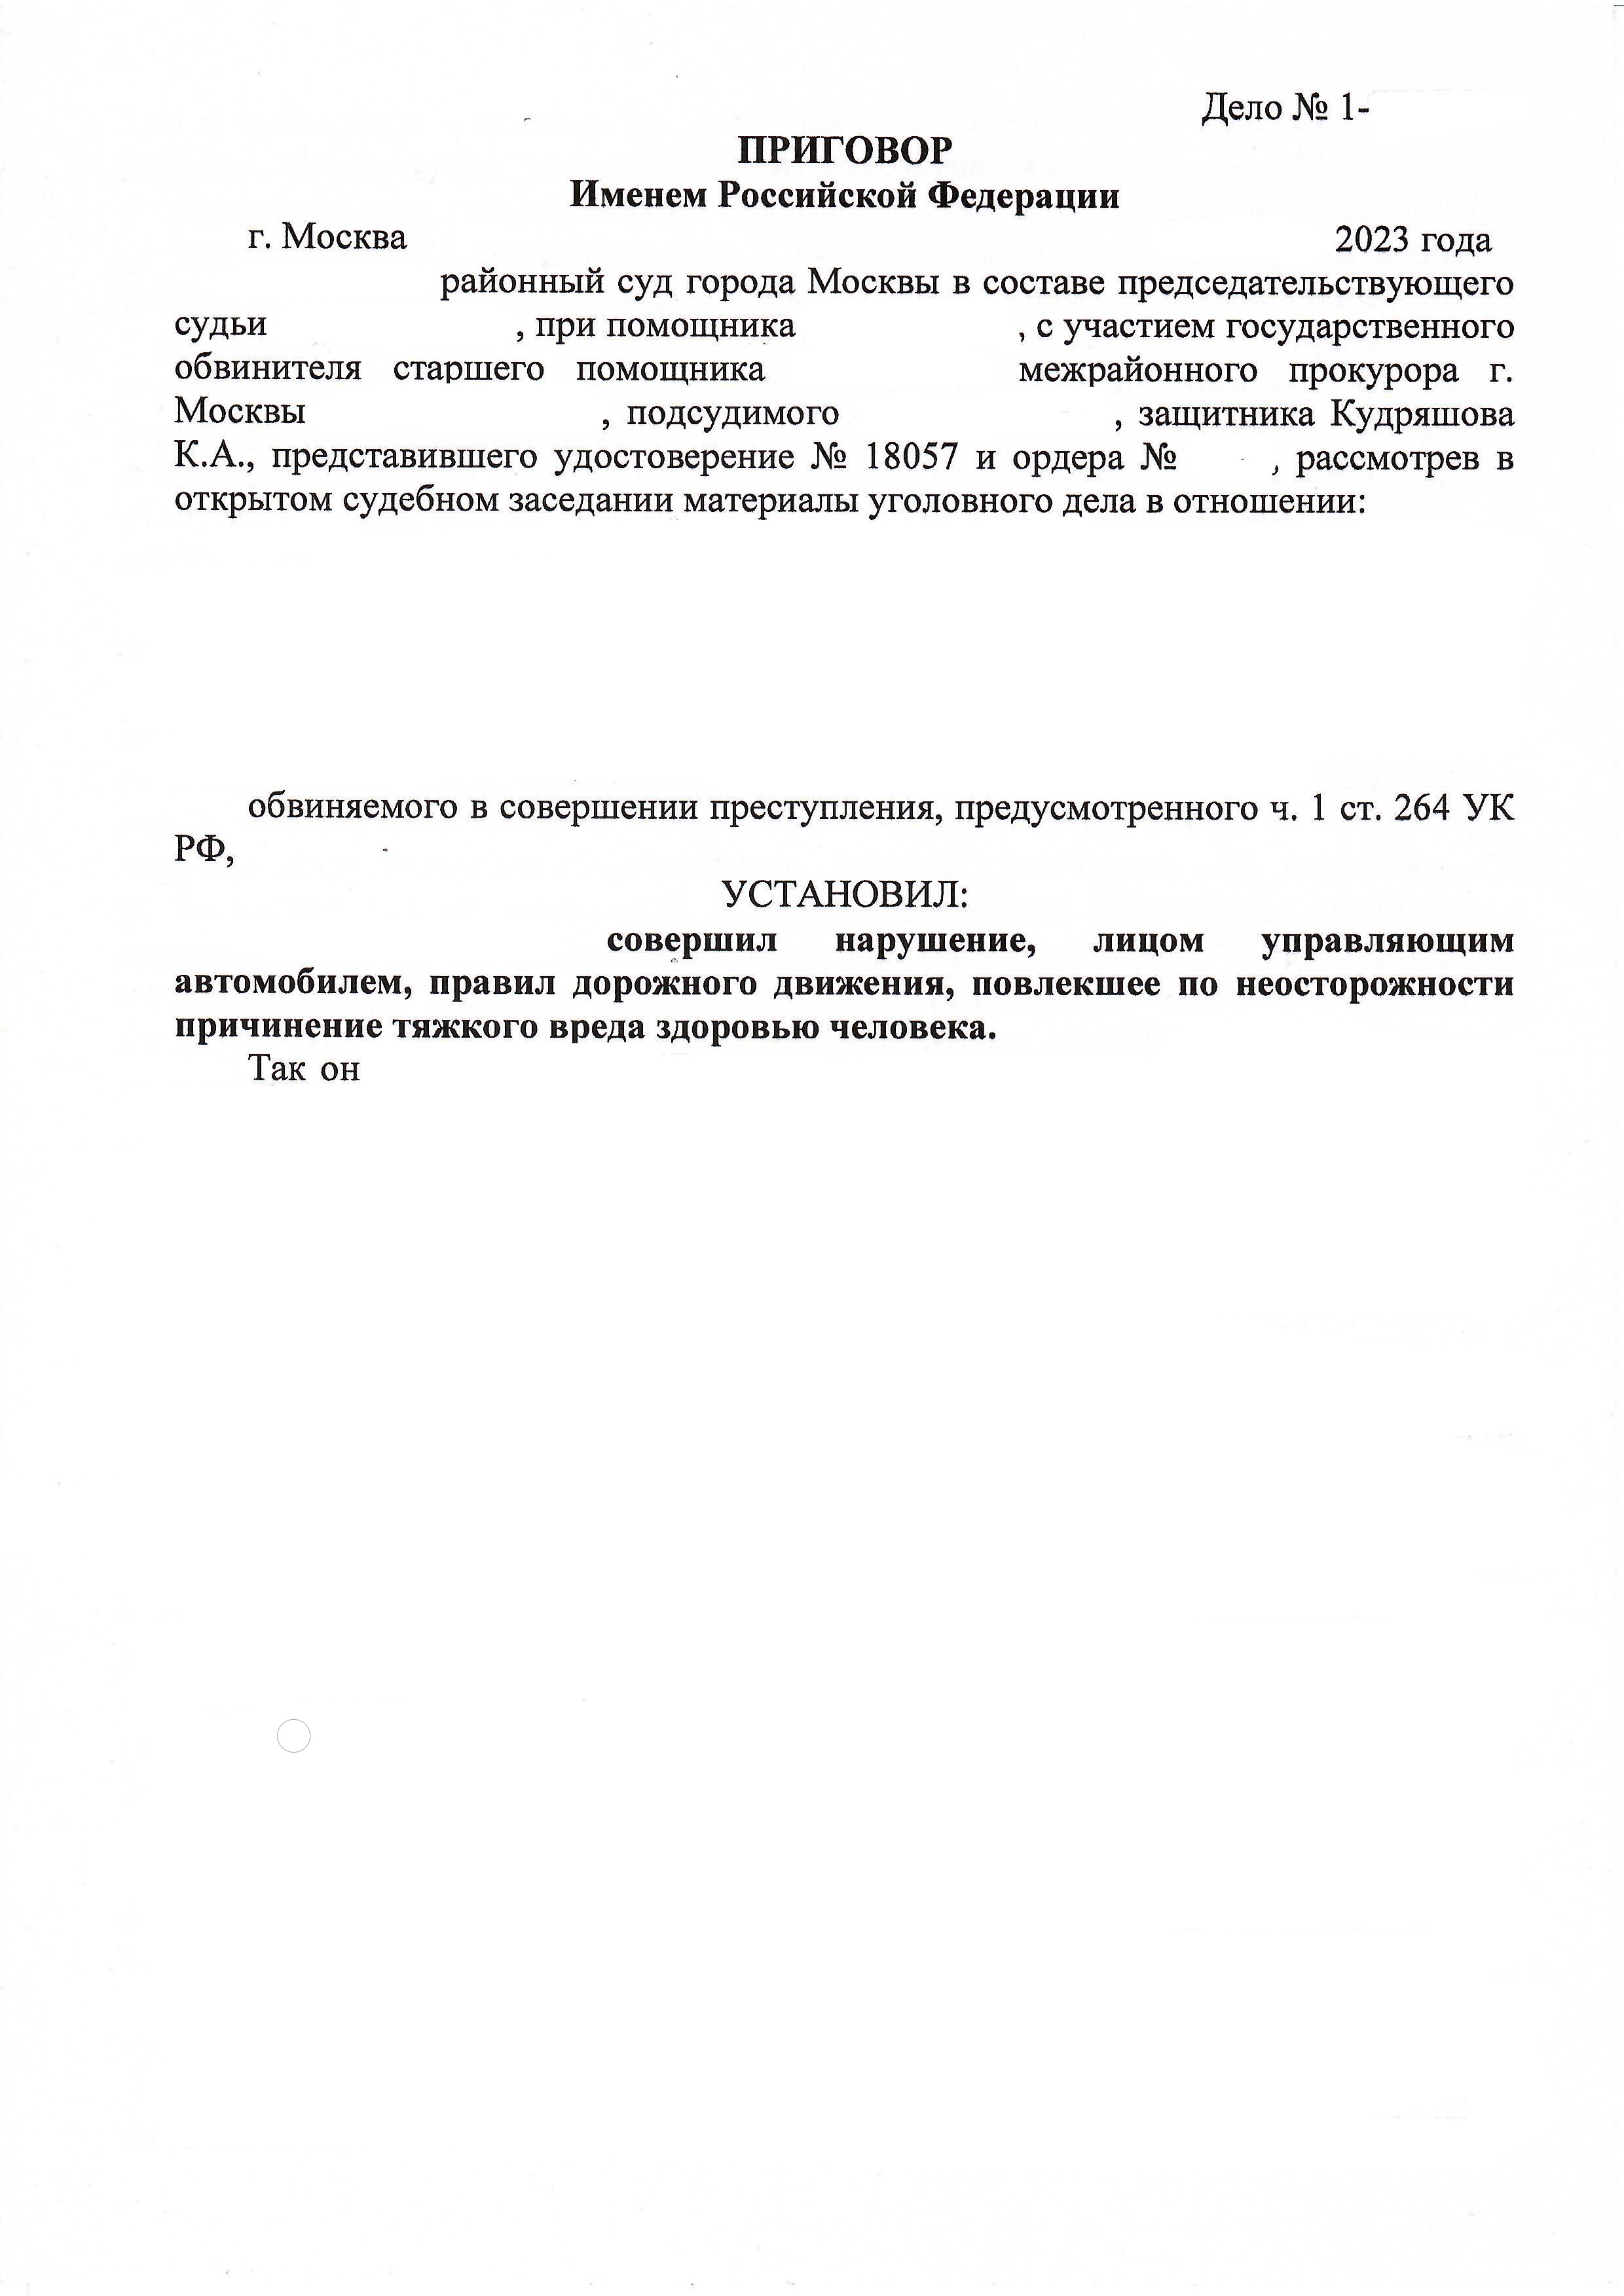 Приговор по ст. 264 ч. 1 УК РФ - Минимальное наказание с сохранением права на управление ТС